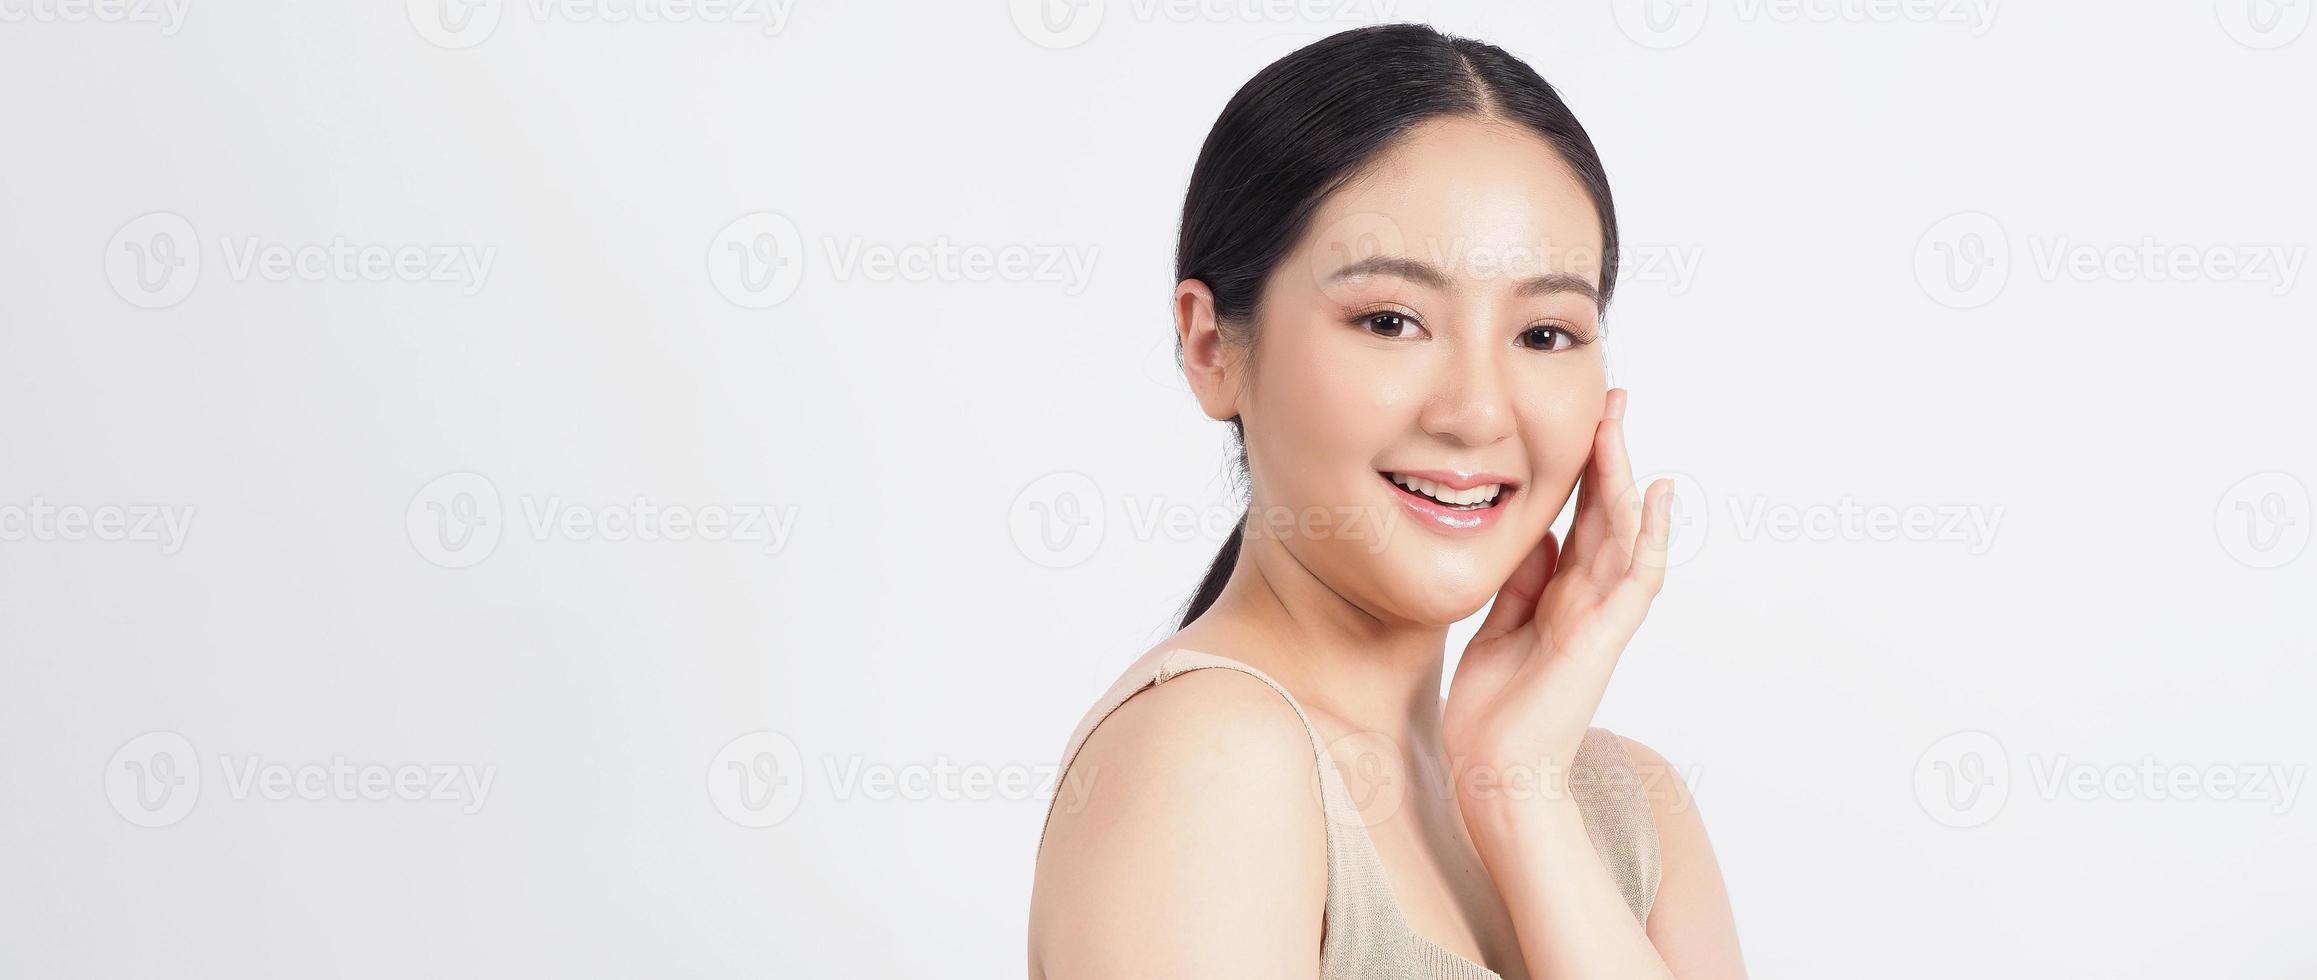 rosto de beleza jovem asiática maquiada para cosméticos para a pele foto